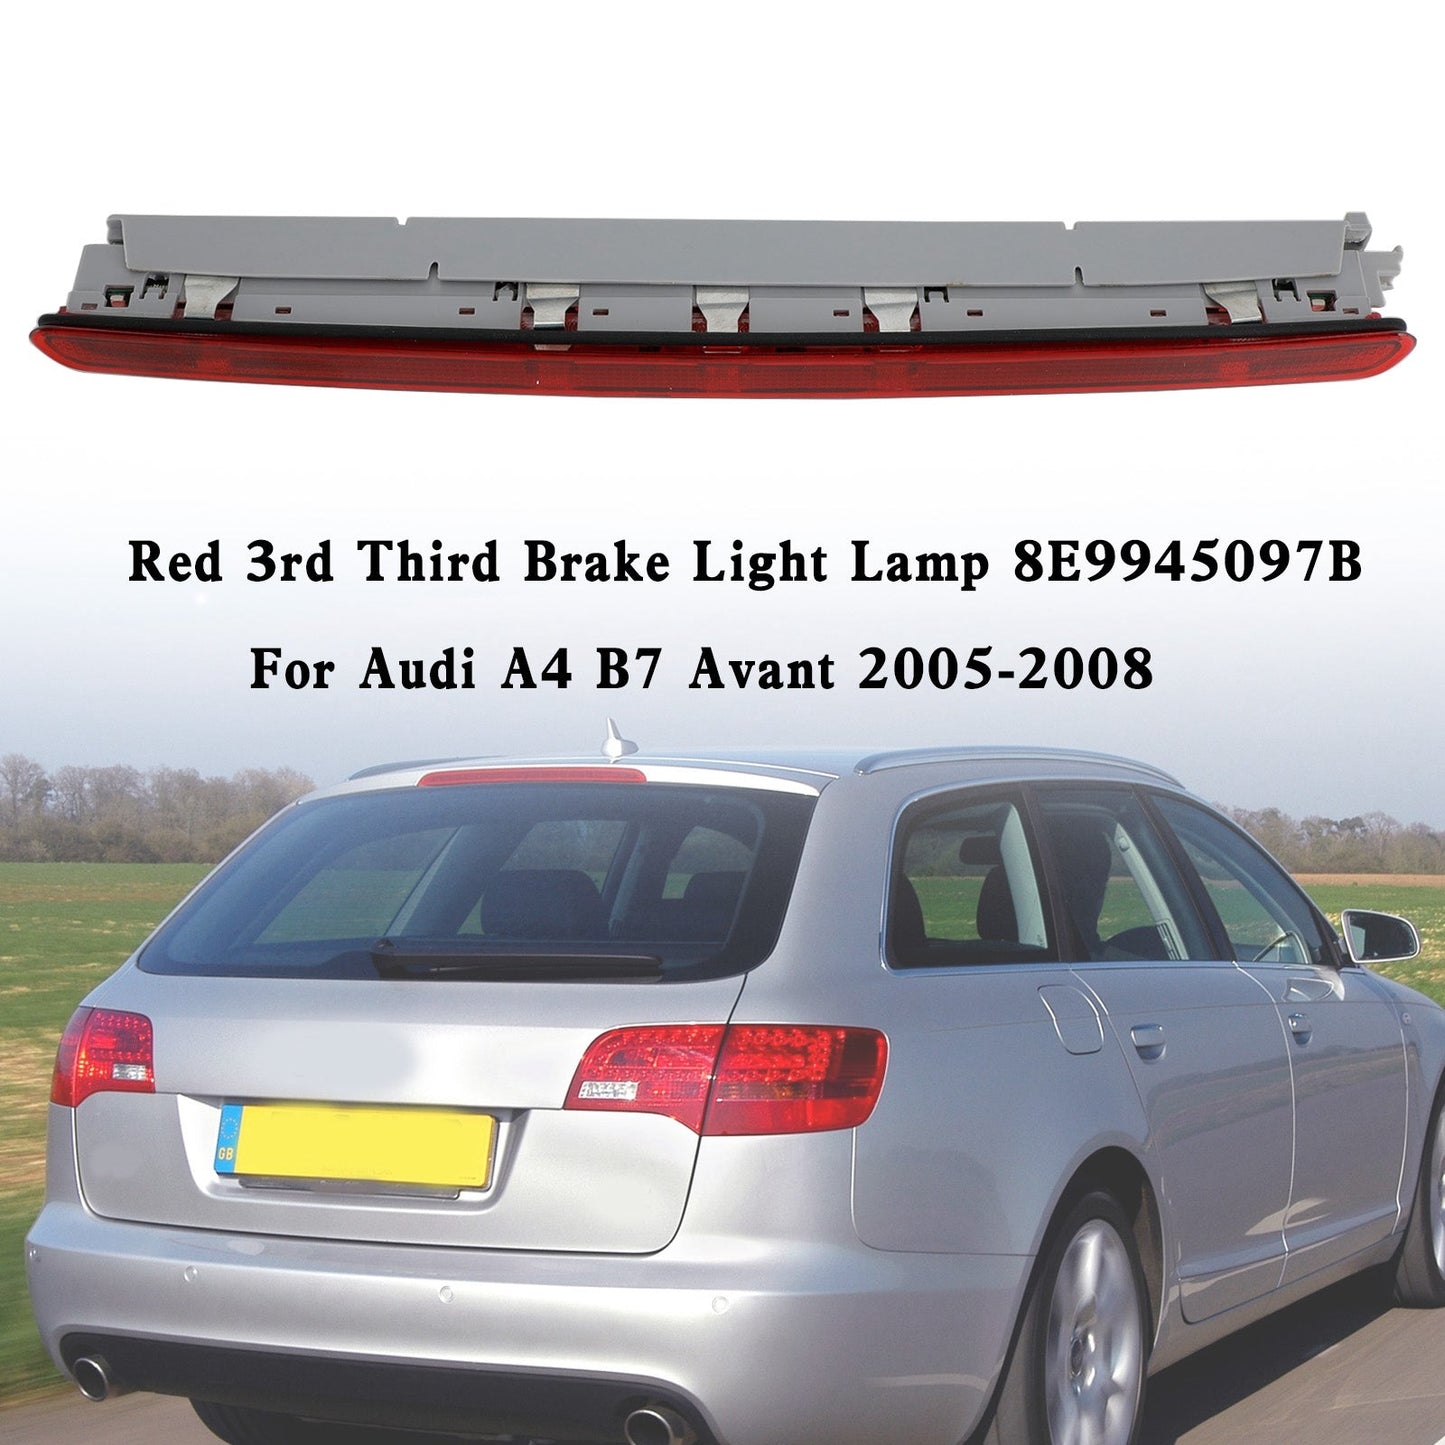 Red 3rd Third Brake Light Lamp 8E9945097B For Audi A4 B7 Avant 2005-2008